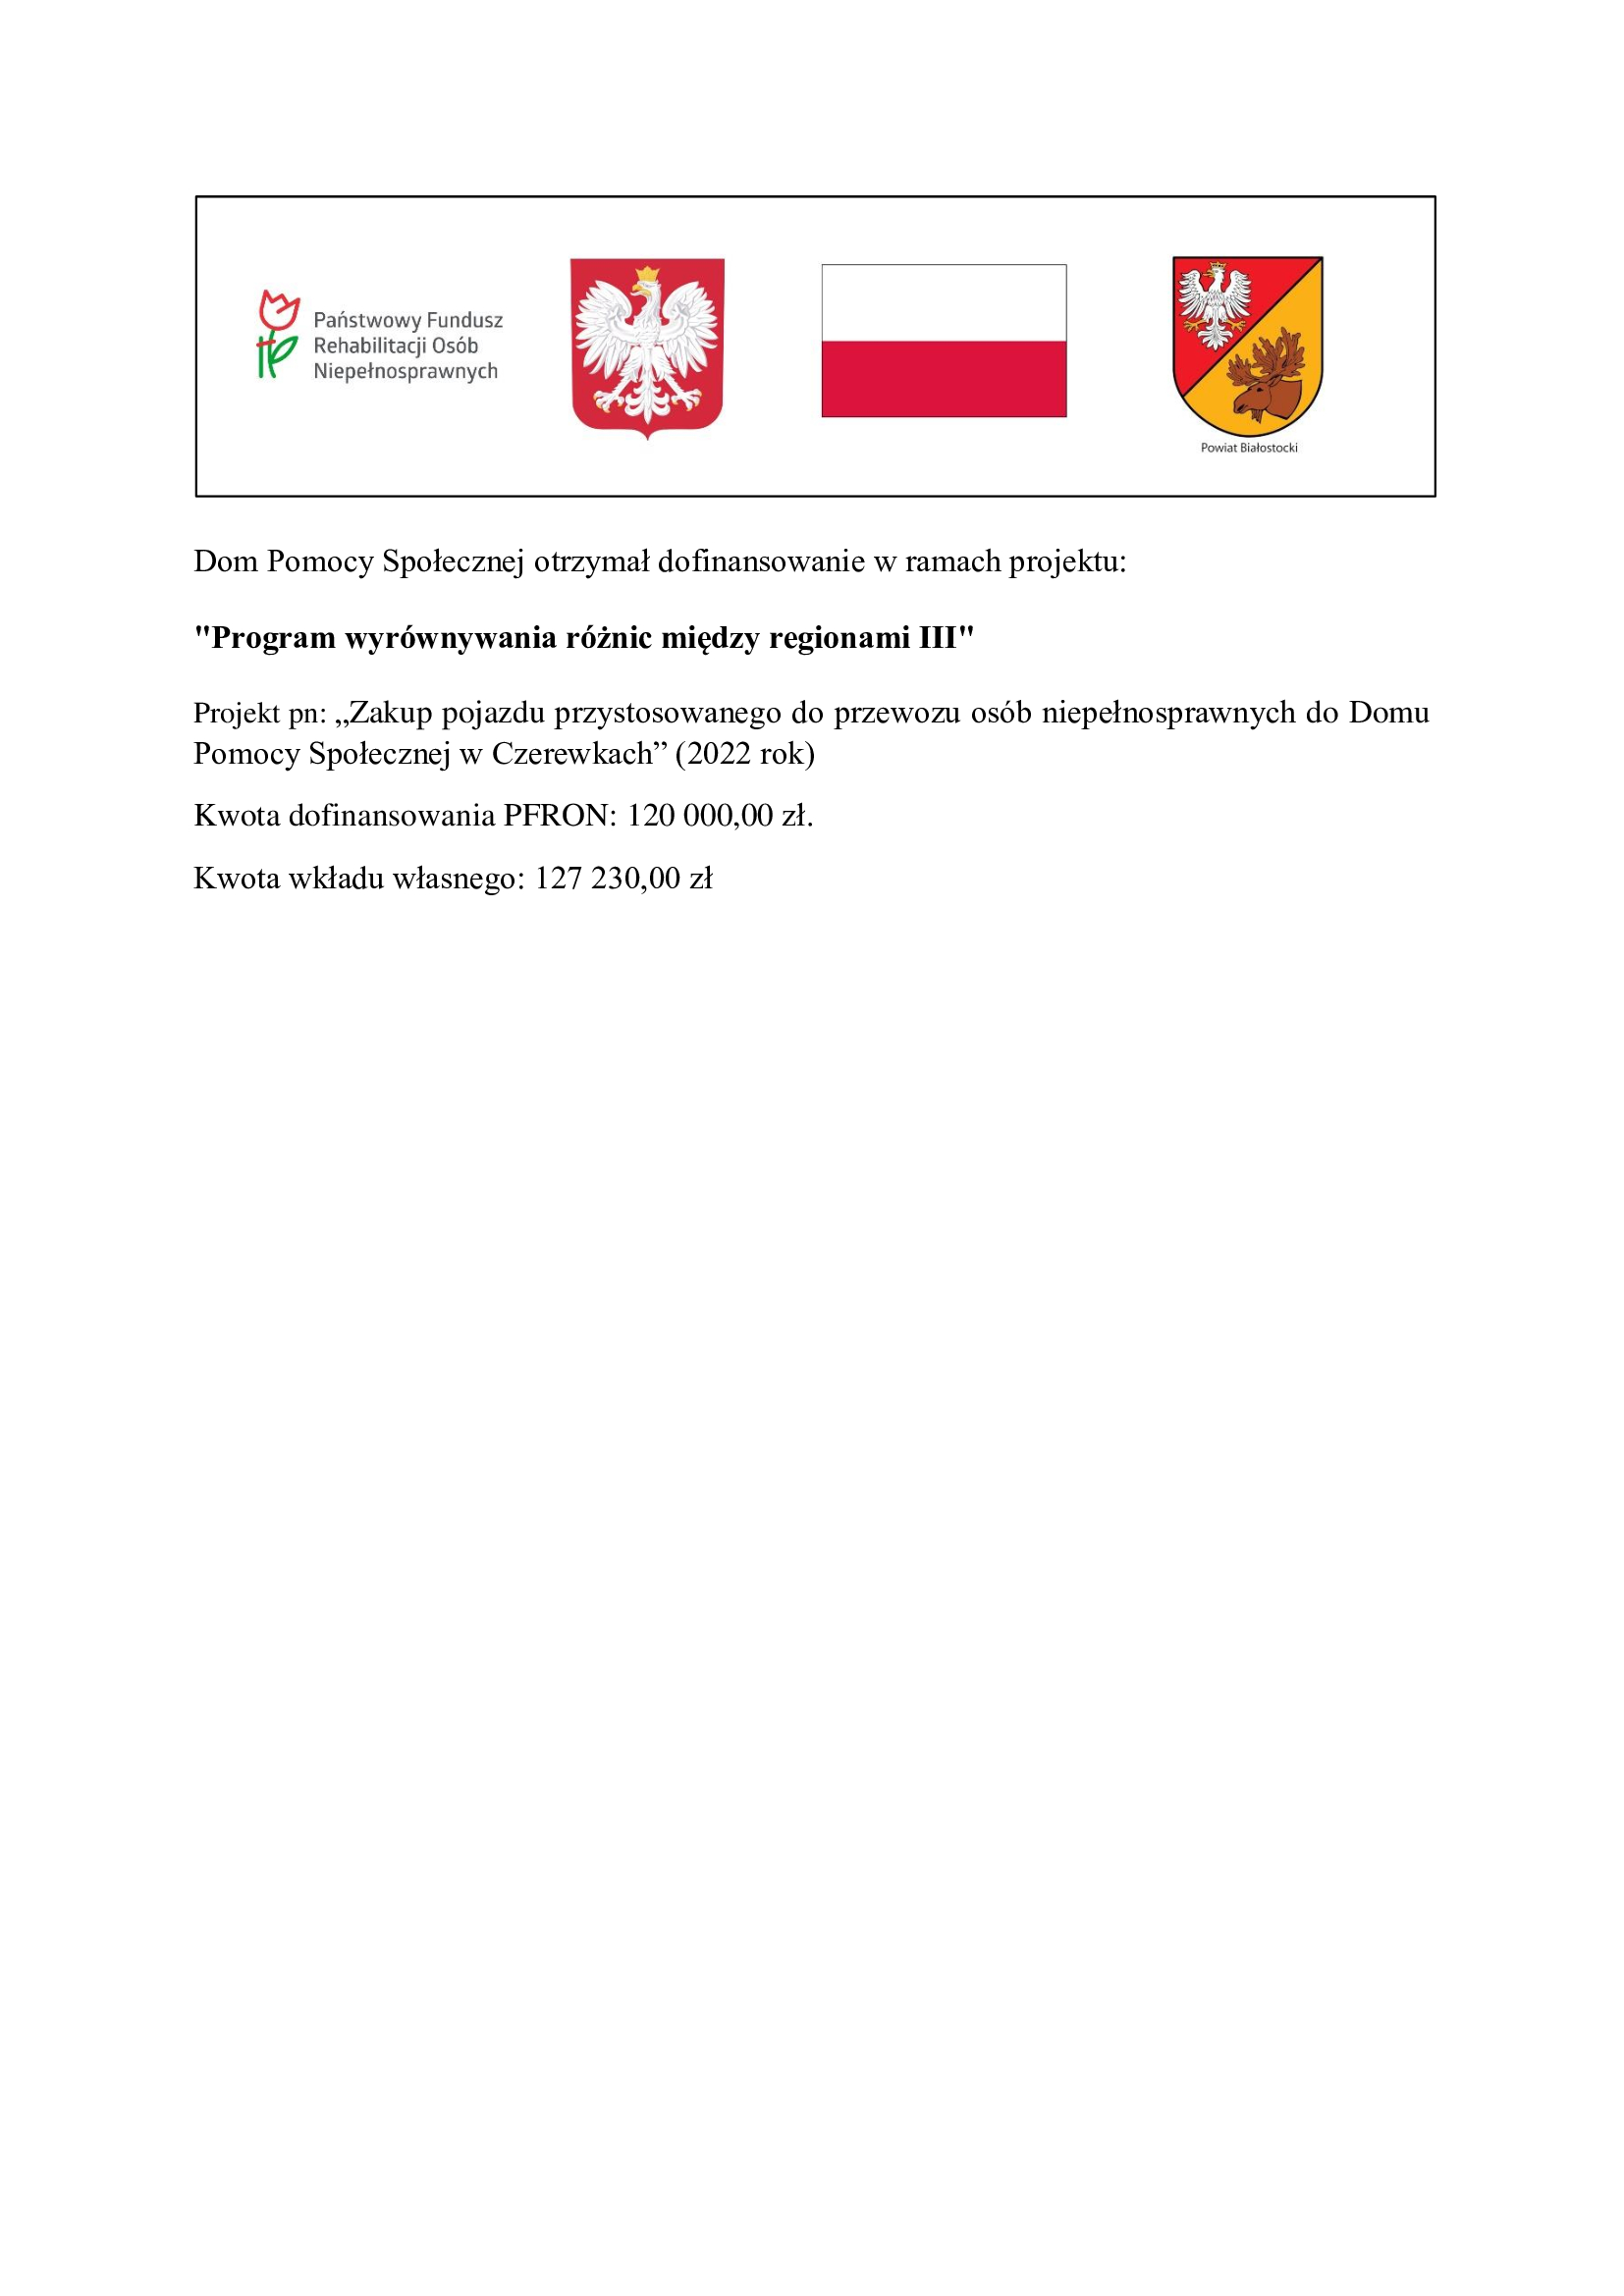 Zakup pojazdu przystosowanego do przewozu osb niepenosprawnych do Domu Pomocy Spoecznej w Czerewkach (2022 rok)